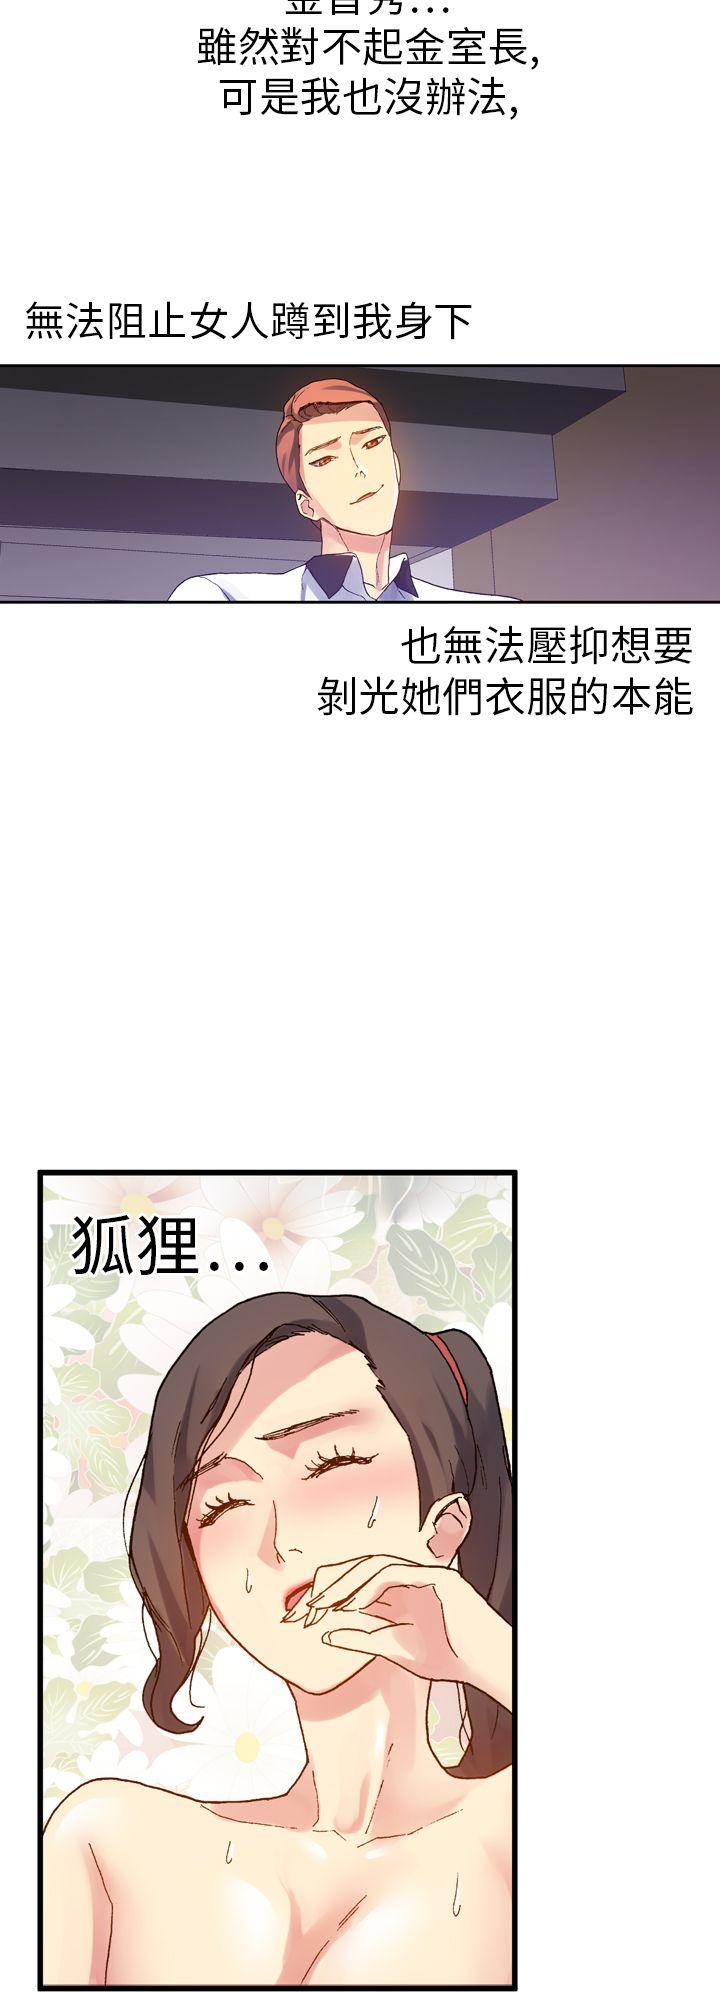 韩国污漫画 幻想中的她(完結) 第11话 30